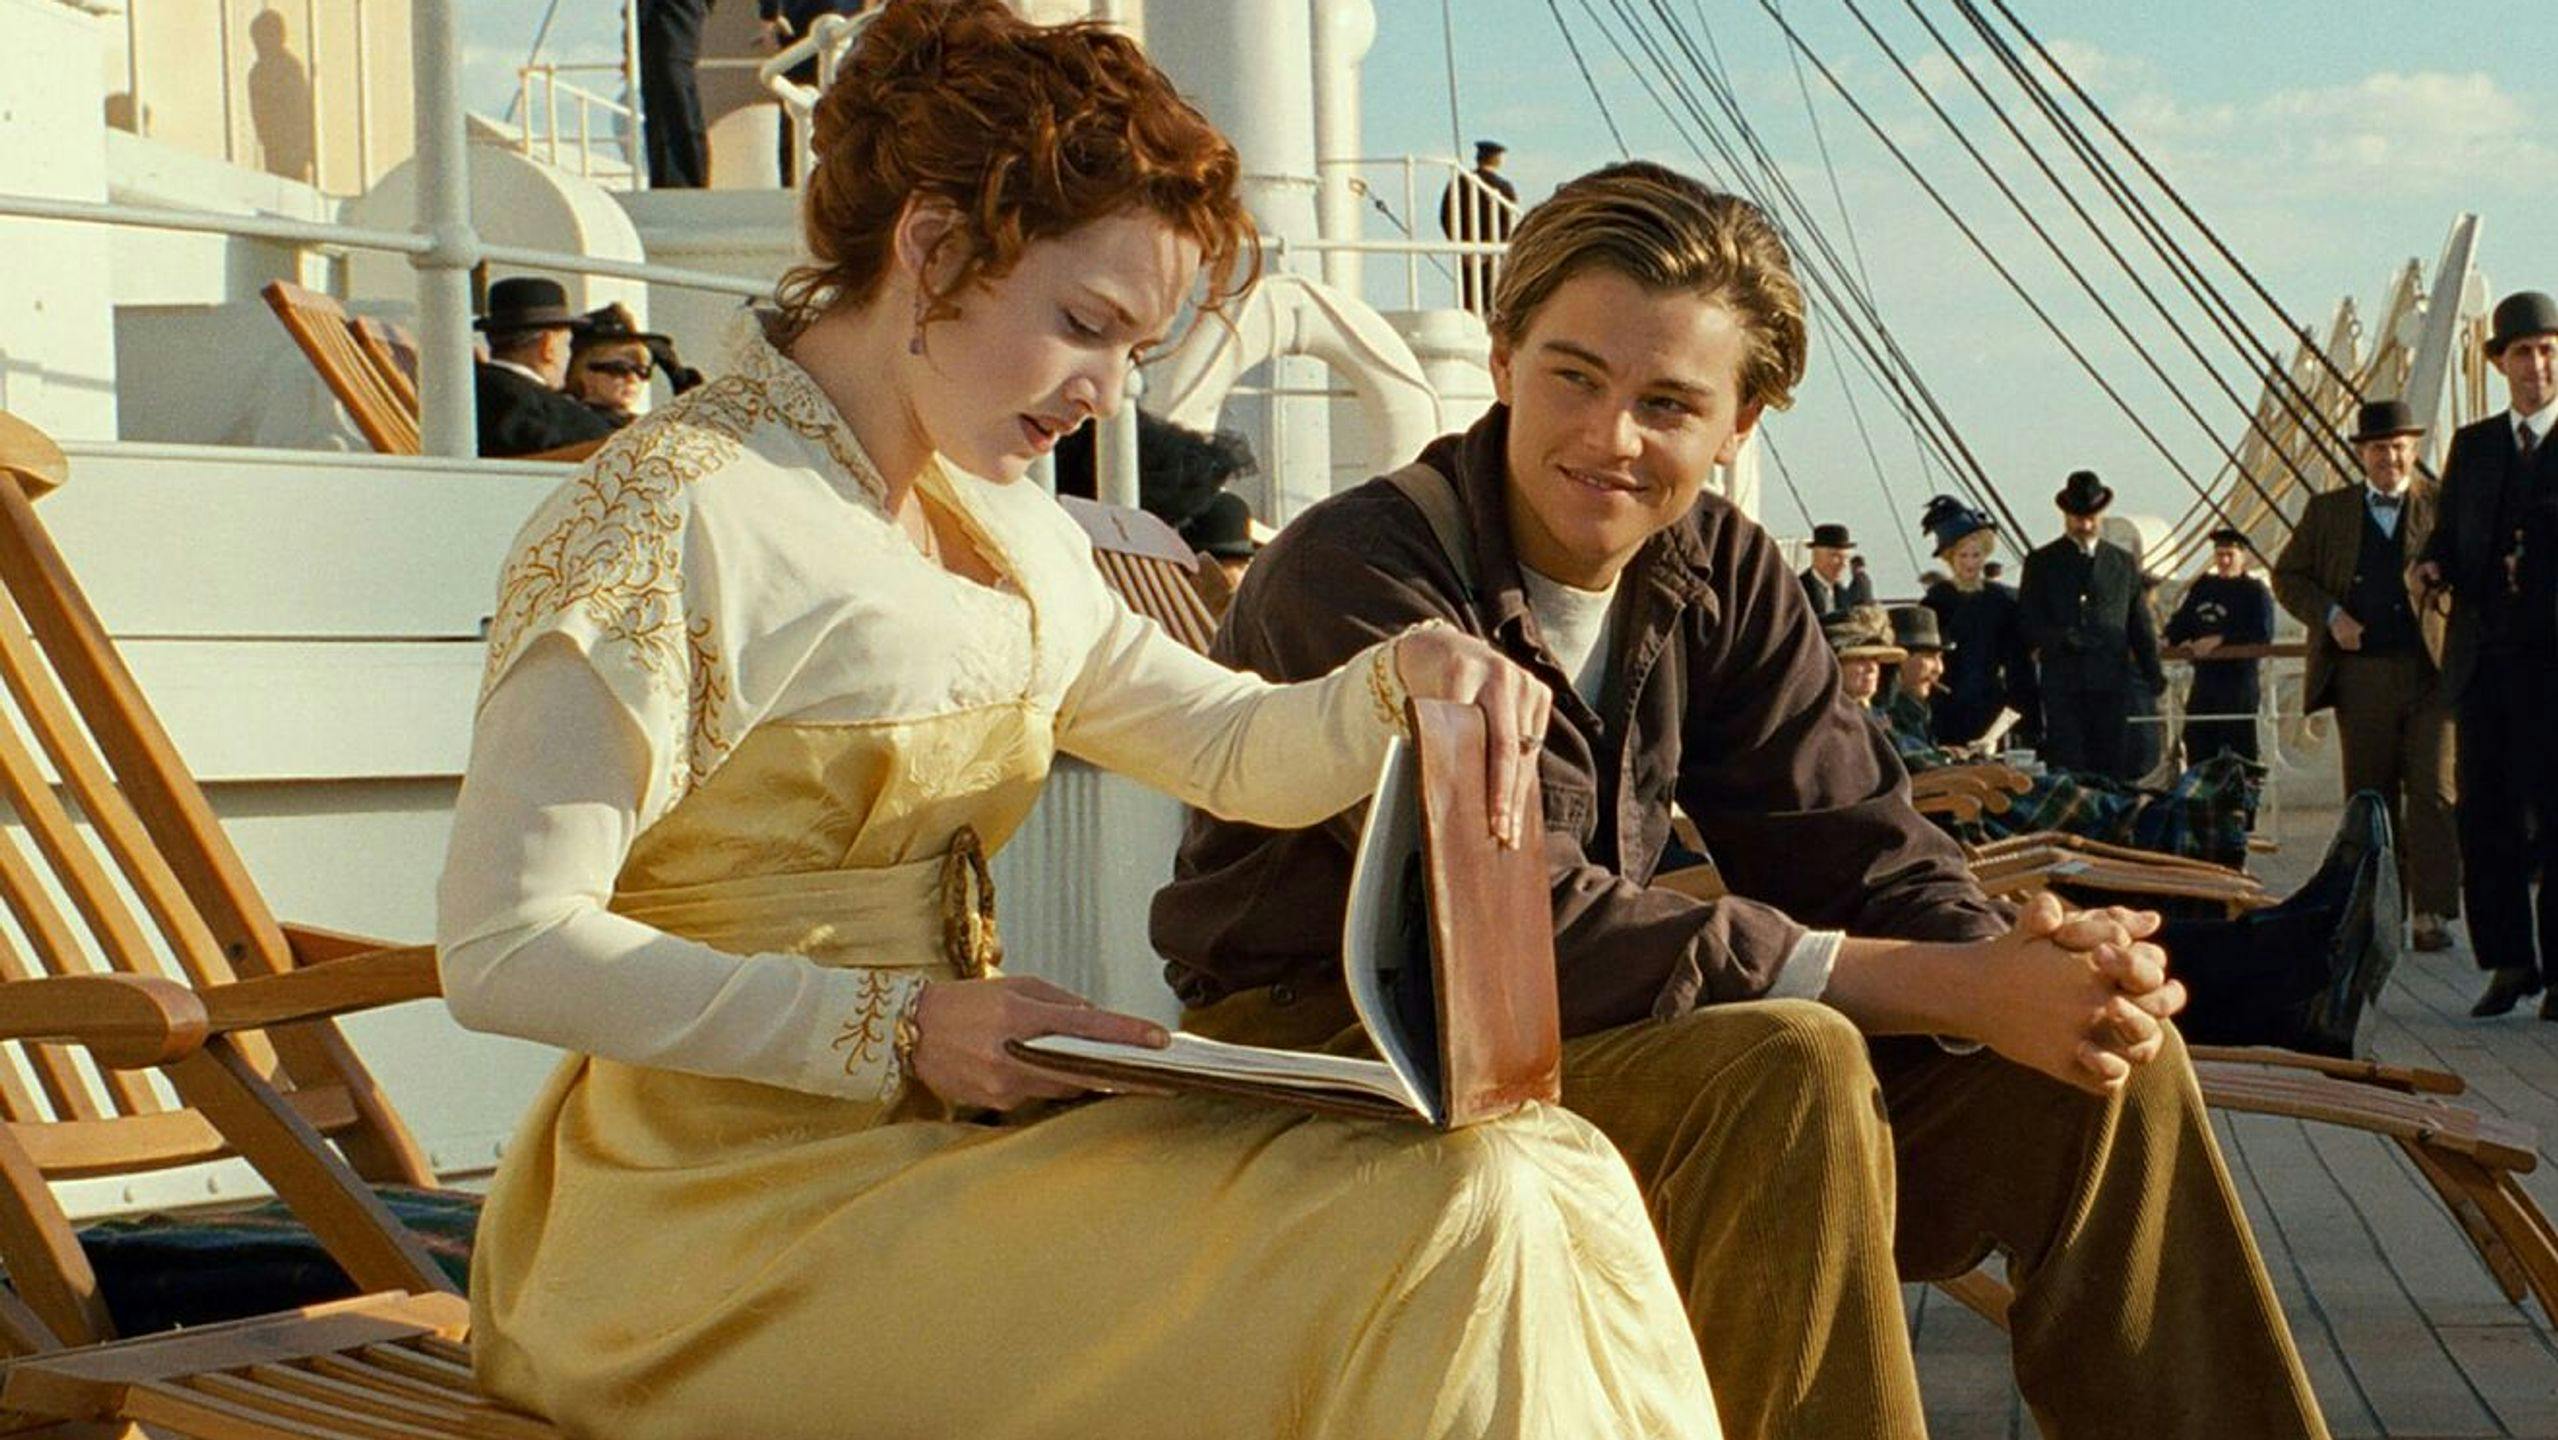 Fotograma promocional de la película 'Titanic', con Kate Winslet y Leonardo DiCaprio en primer plano